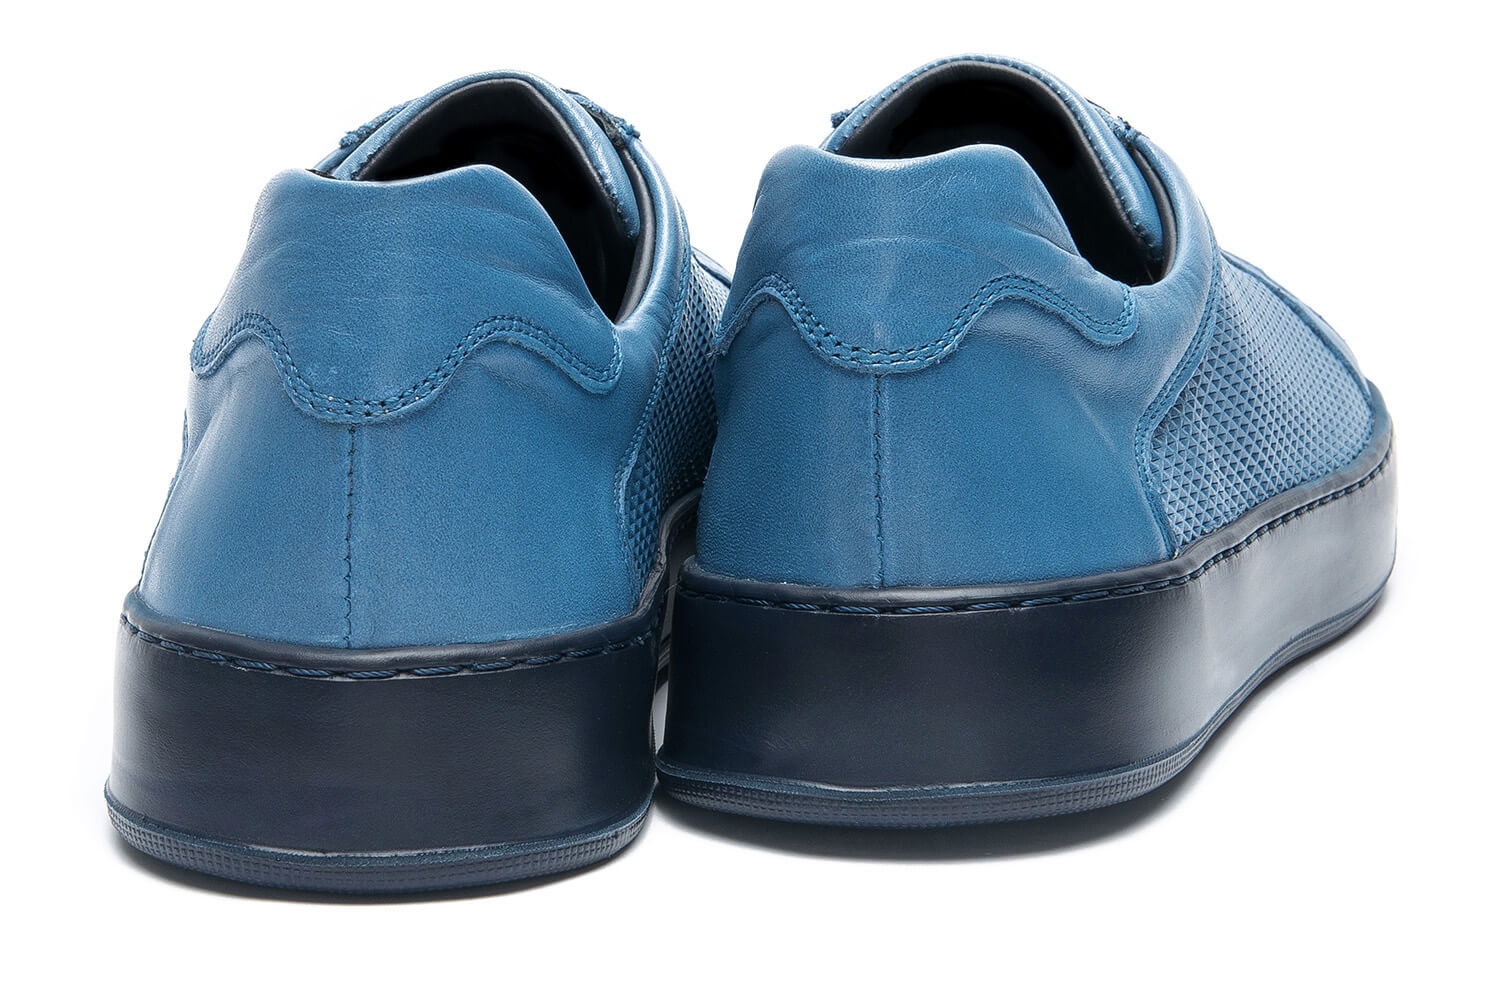 Pantofi albastri piele naturala 2